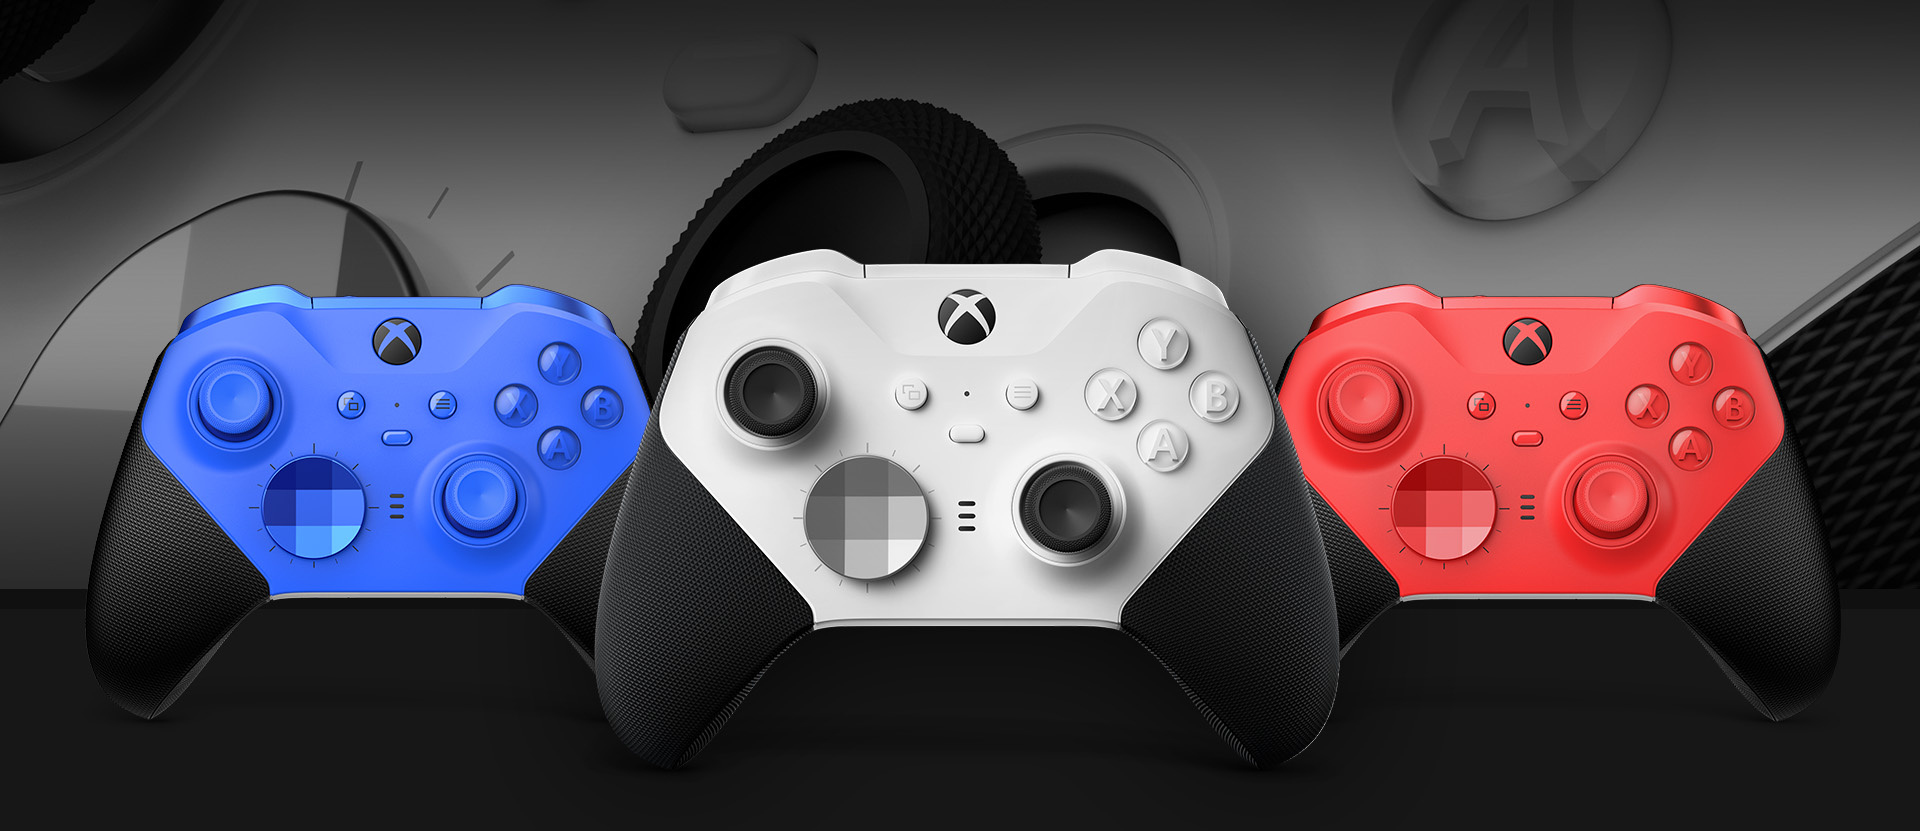 Xbox Elite Wireless Controller Series 2 – Core (Weiß) mit anderen Farboptionen daneben von vorn. Nahaufnahme der Controller-Ministicks und des strukturierten Griffs im Hintergrund.